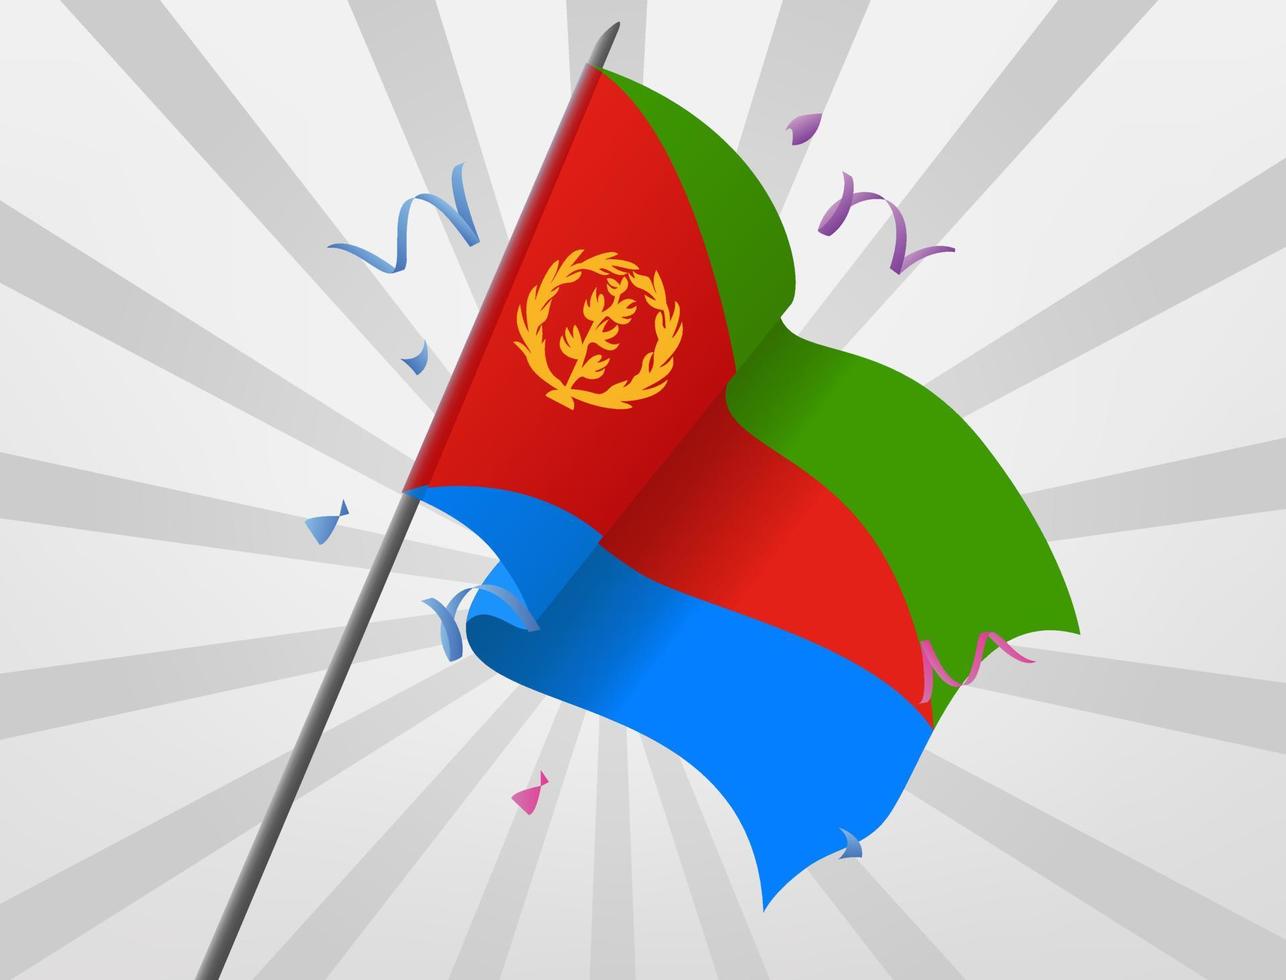 eritreas festliga flagga vajar på höga höjder vektor